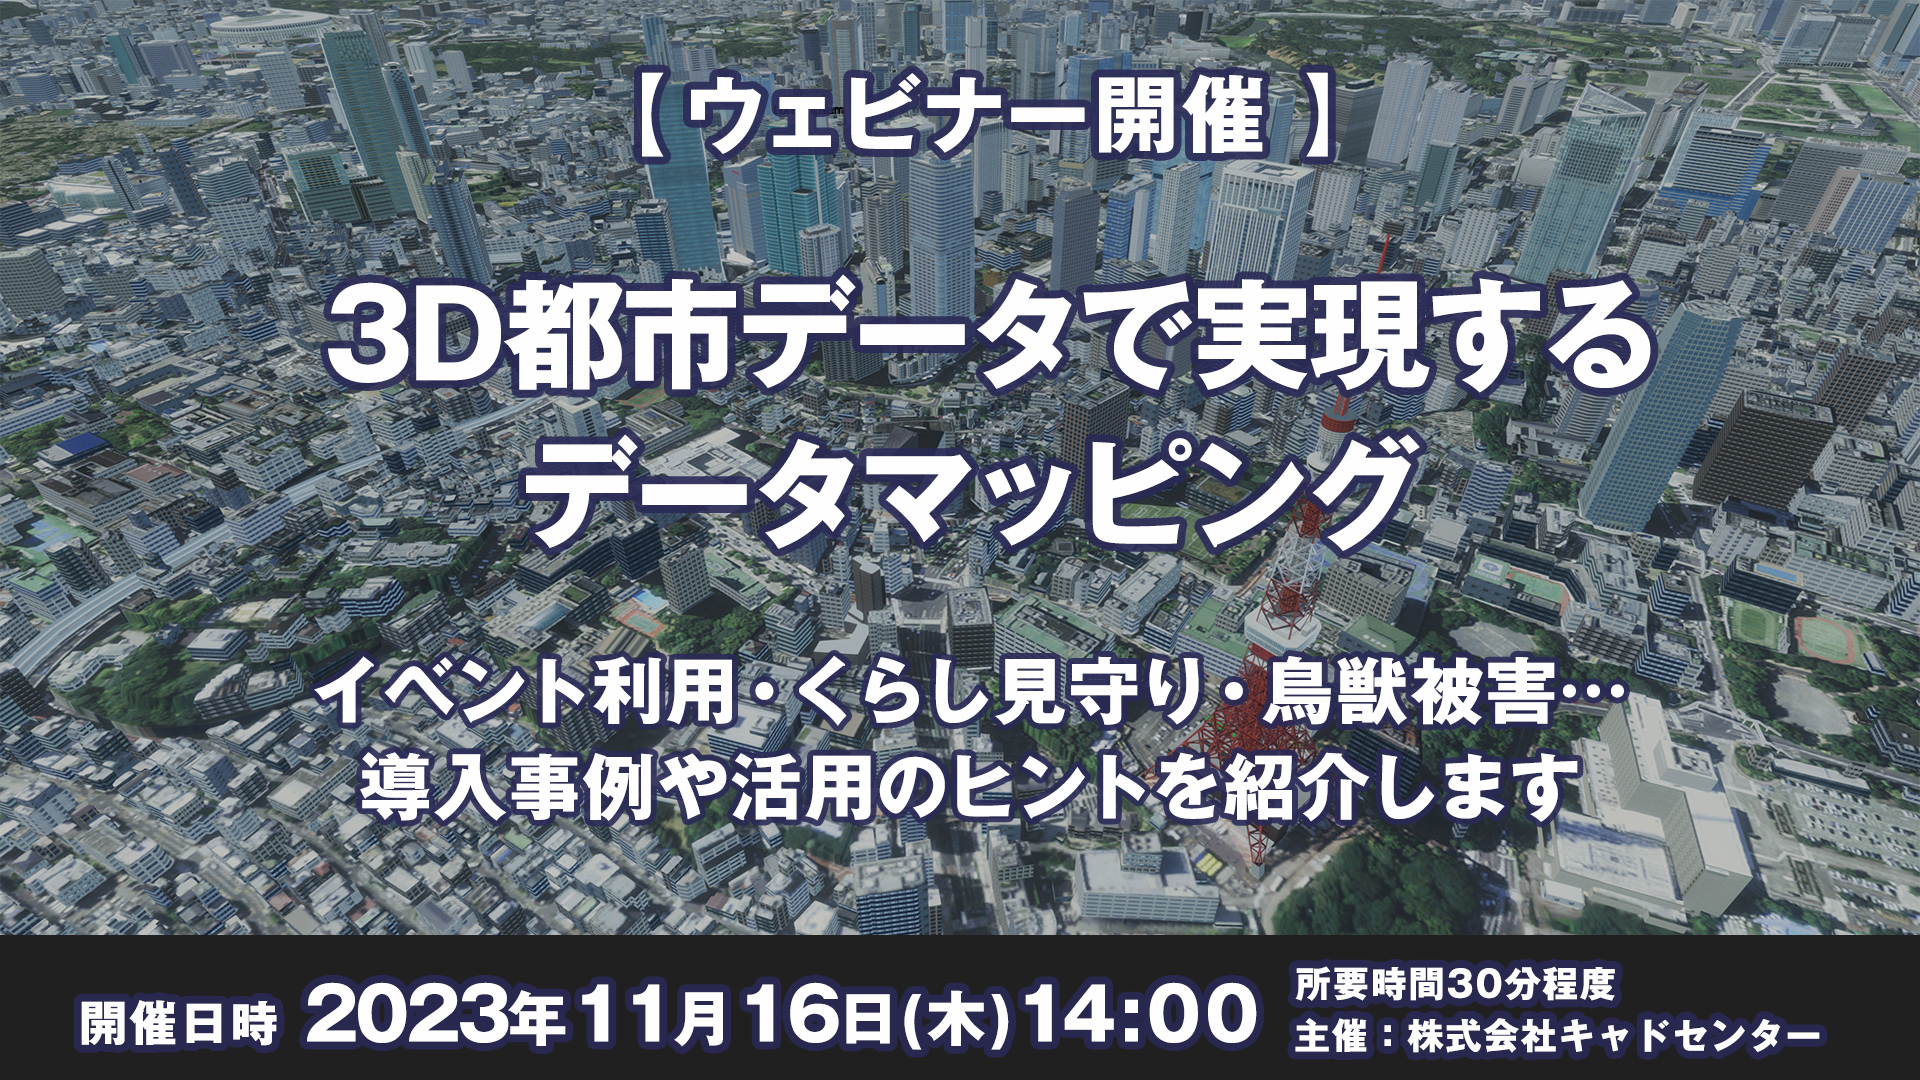 【ウェビナー 11月16日開催】3D都市データで実現するデータマッピング